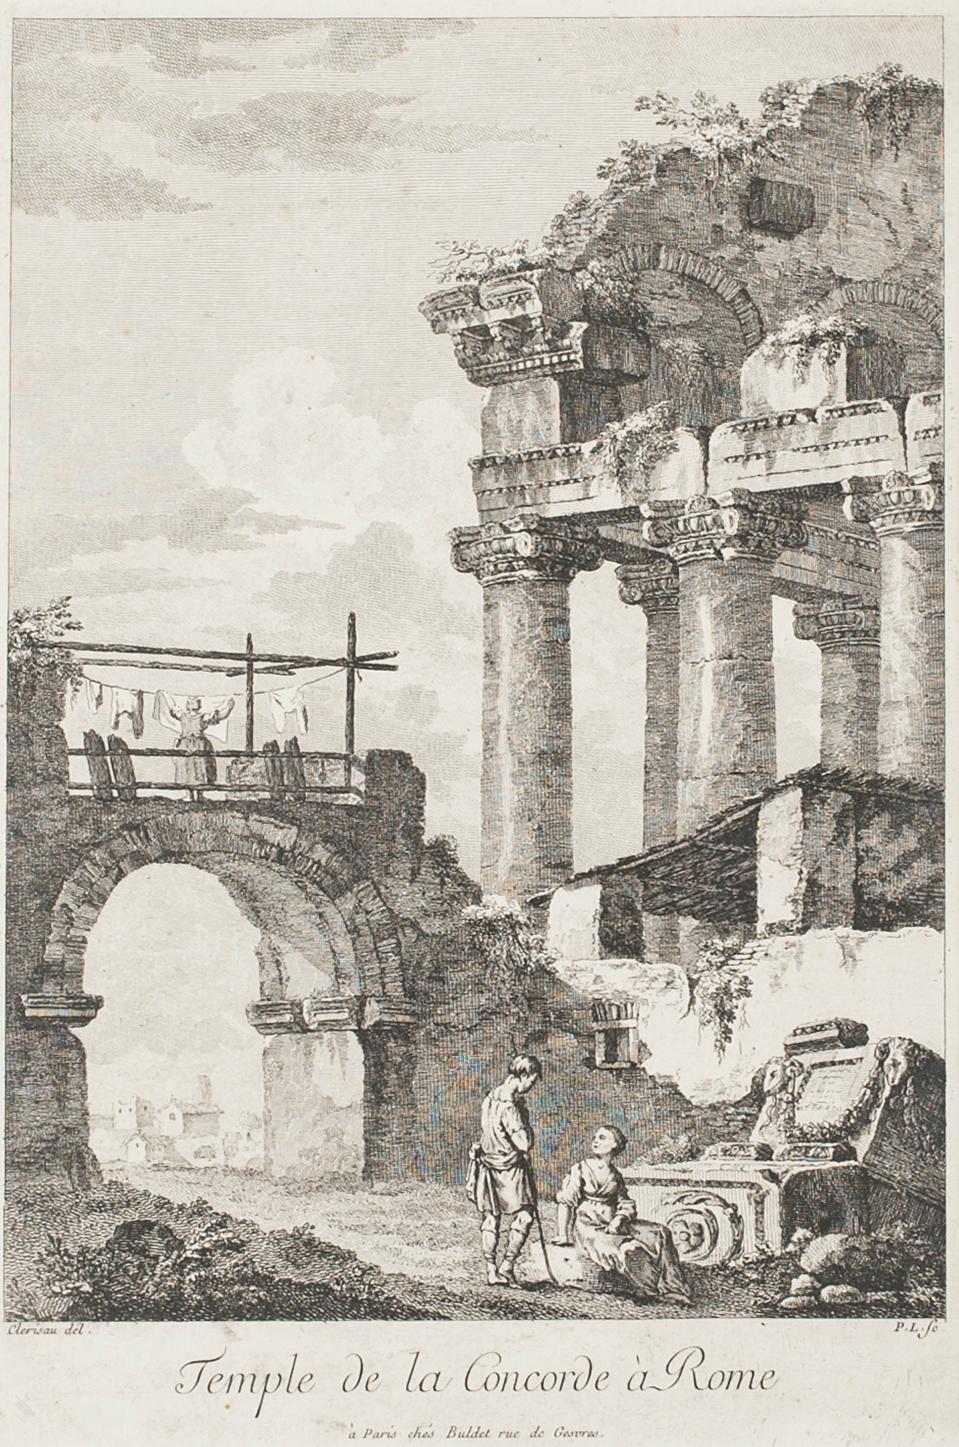 Charles-Louis Clérisseau Figurative Print - Temple de la Concorde, Rome - Etching by C.-L. Clérisseau - Early 1800